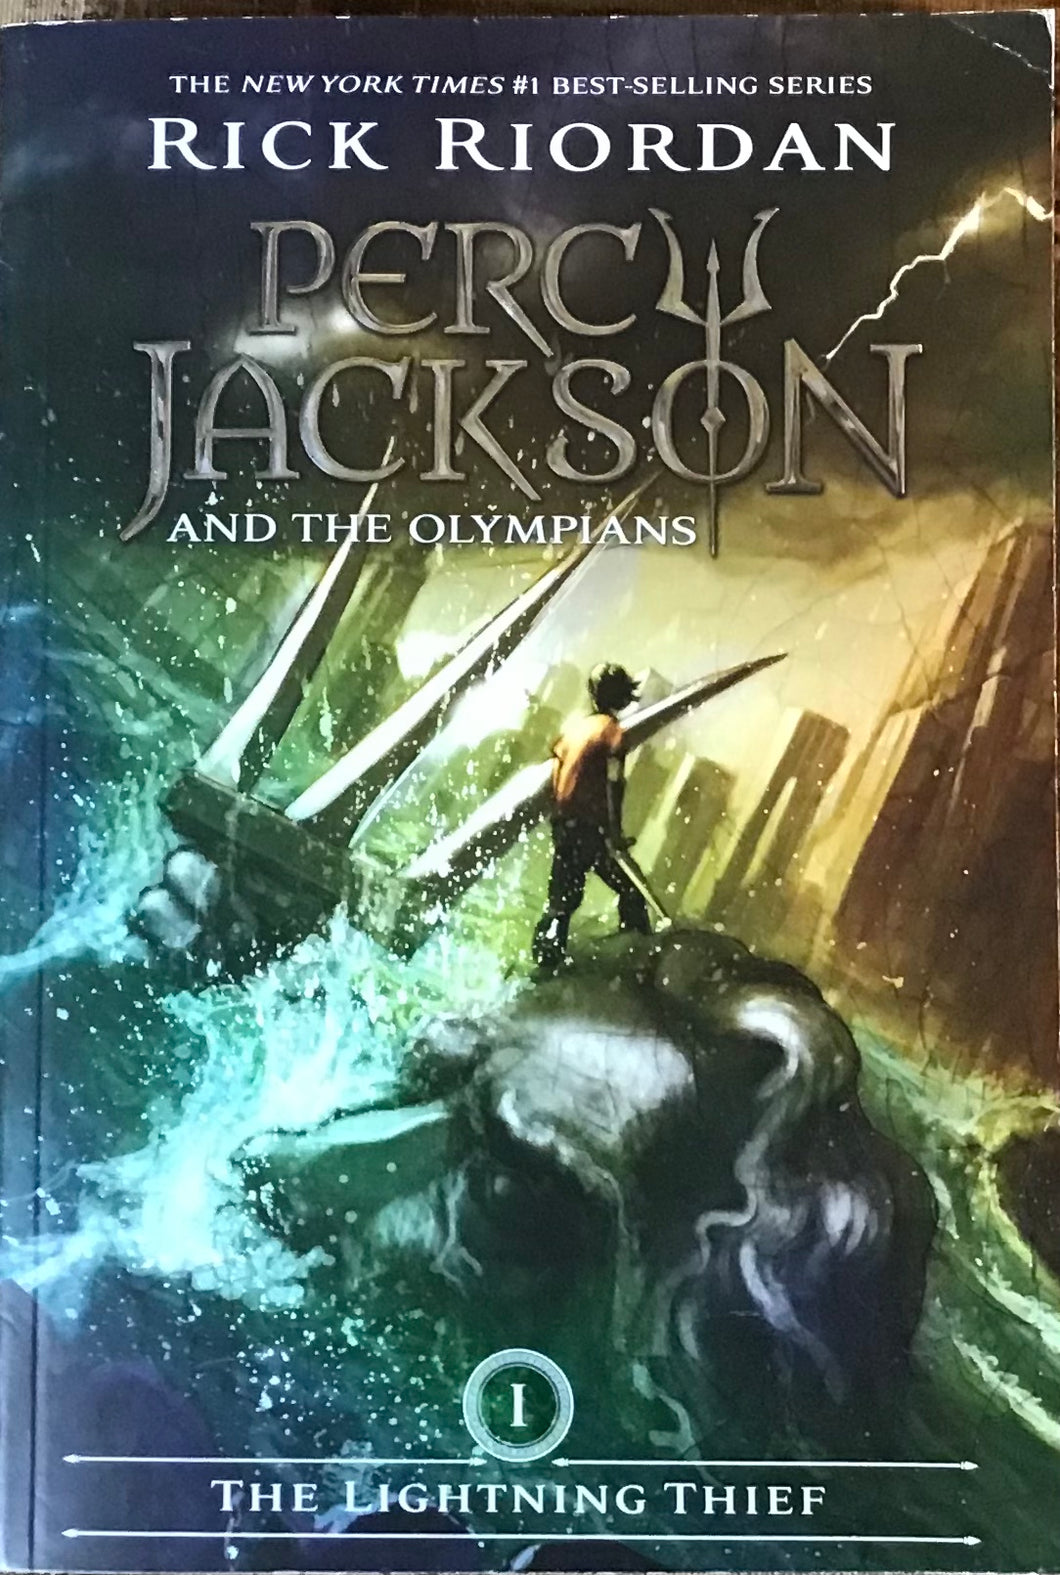 Percy Jackson and The Olympians, Rick Riordan